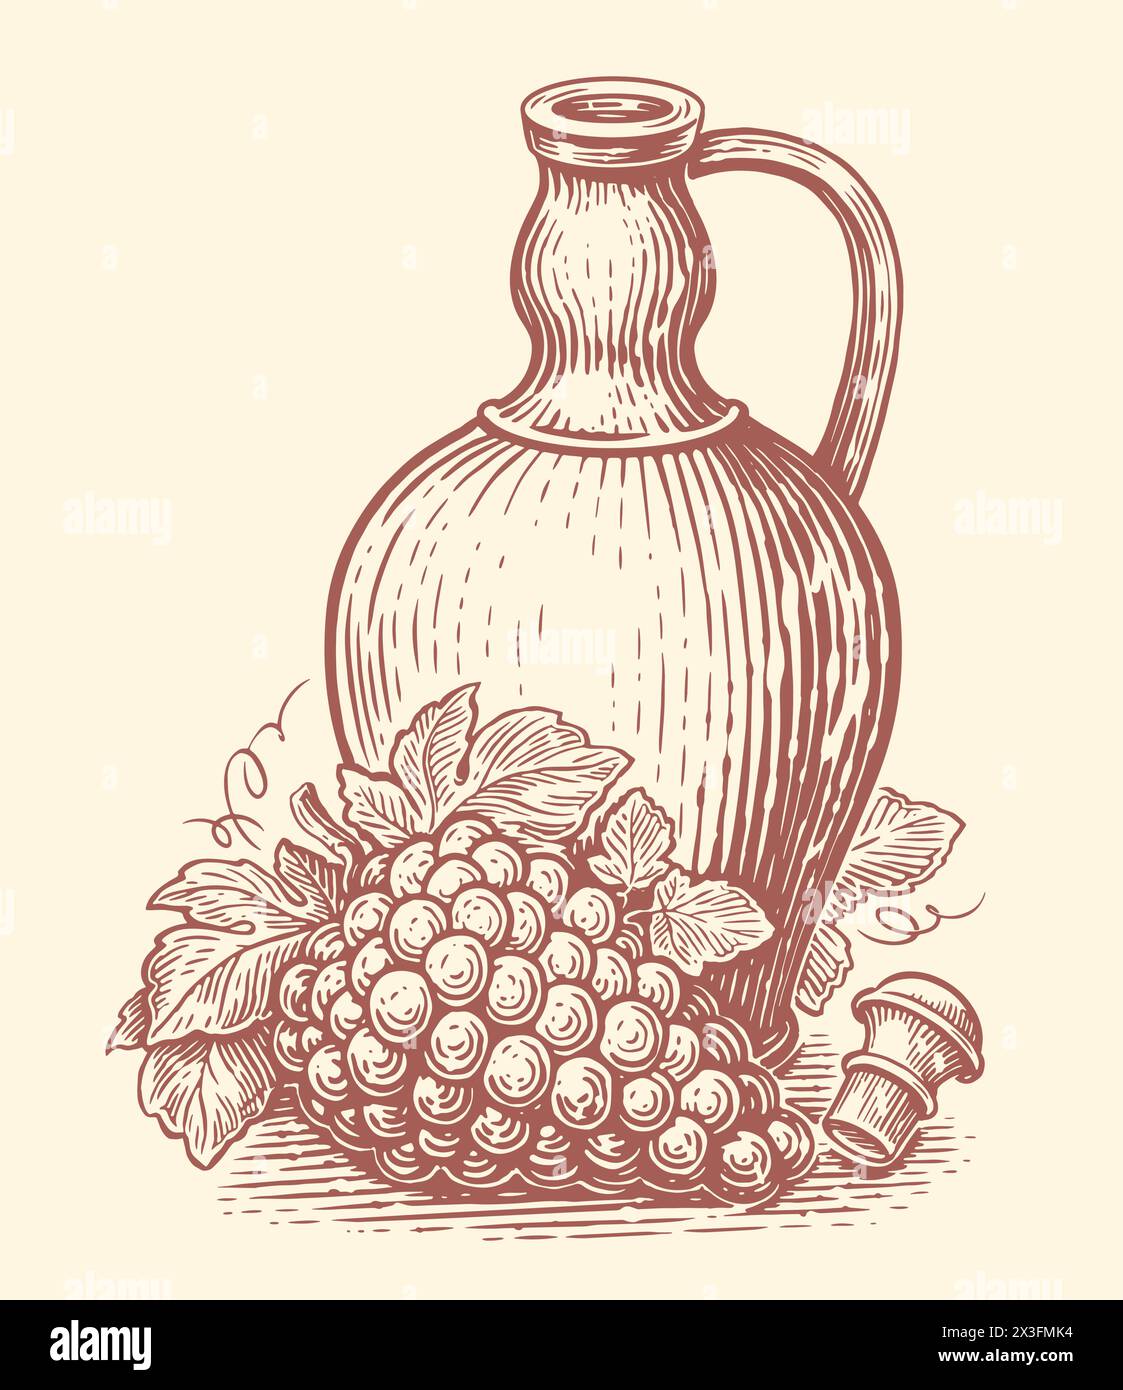 Cruche en argile avec boisson au vin et grappe de raisins. Vinification, croquis de cave. Illustration vectorielle vintage dessinée à la main Illustration de Vecteur